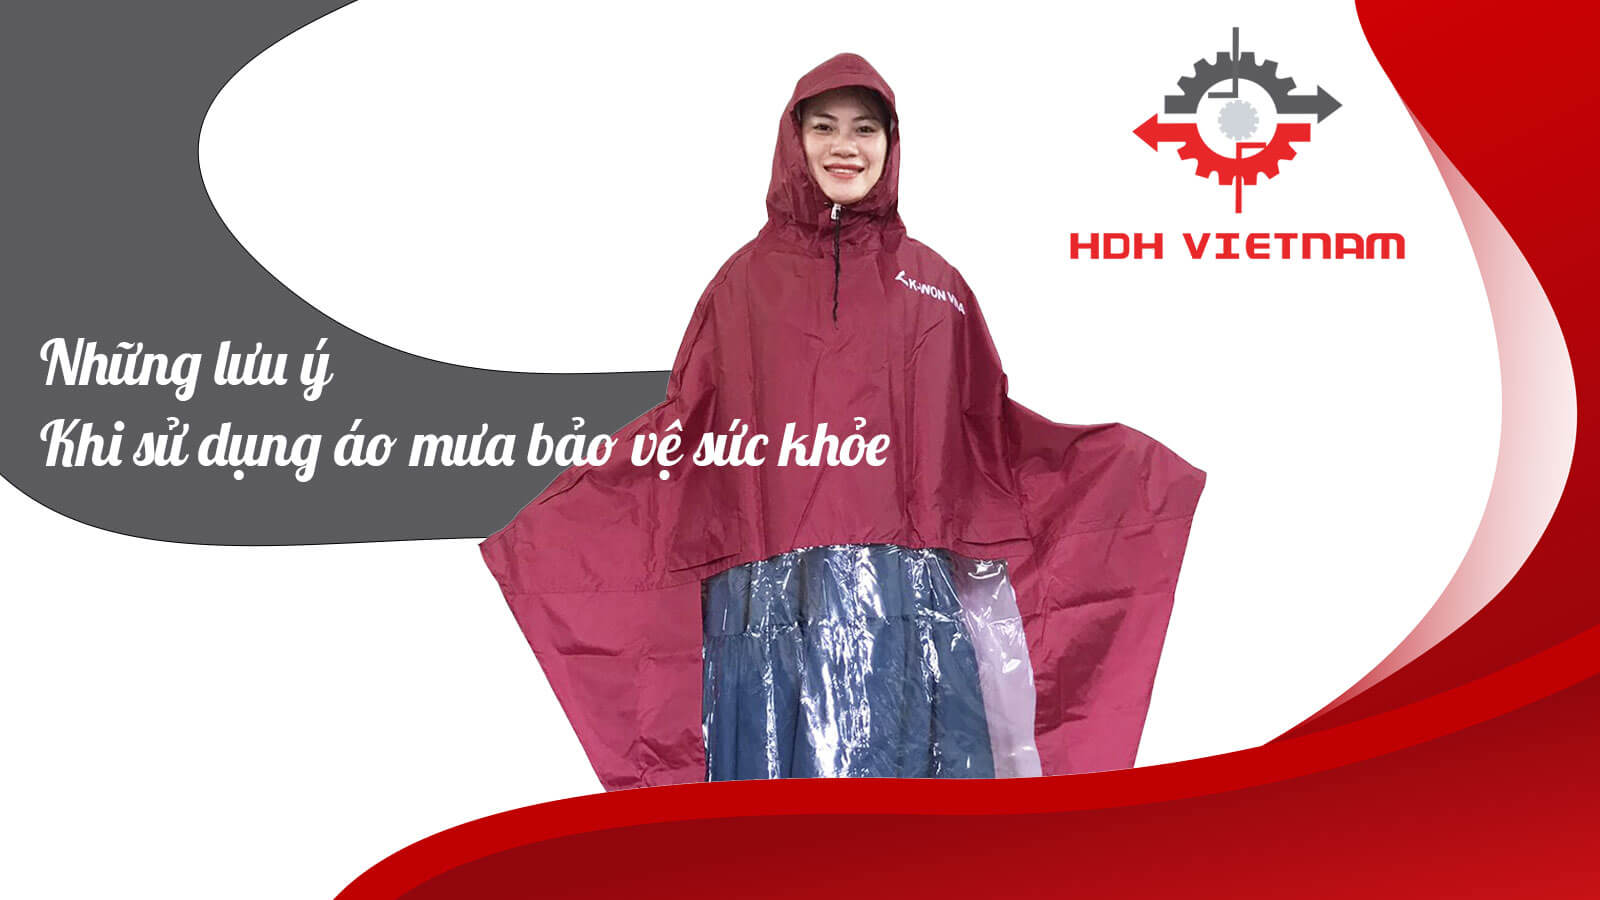 Những lưu ý khí sử dụng áo mưa bảo vệ sức khỏe